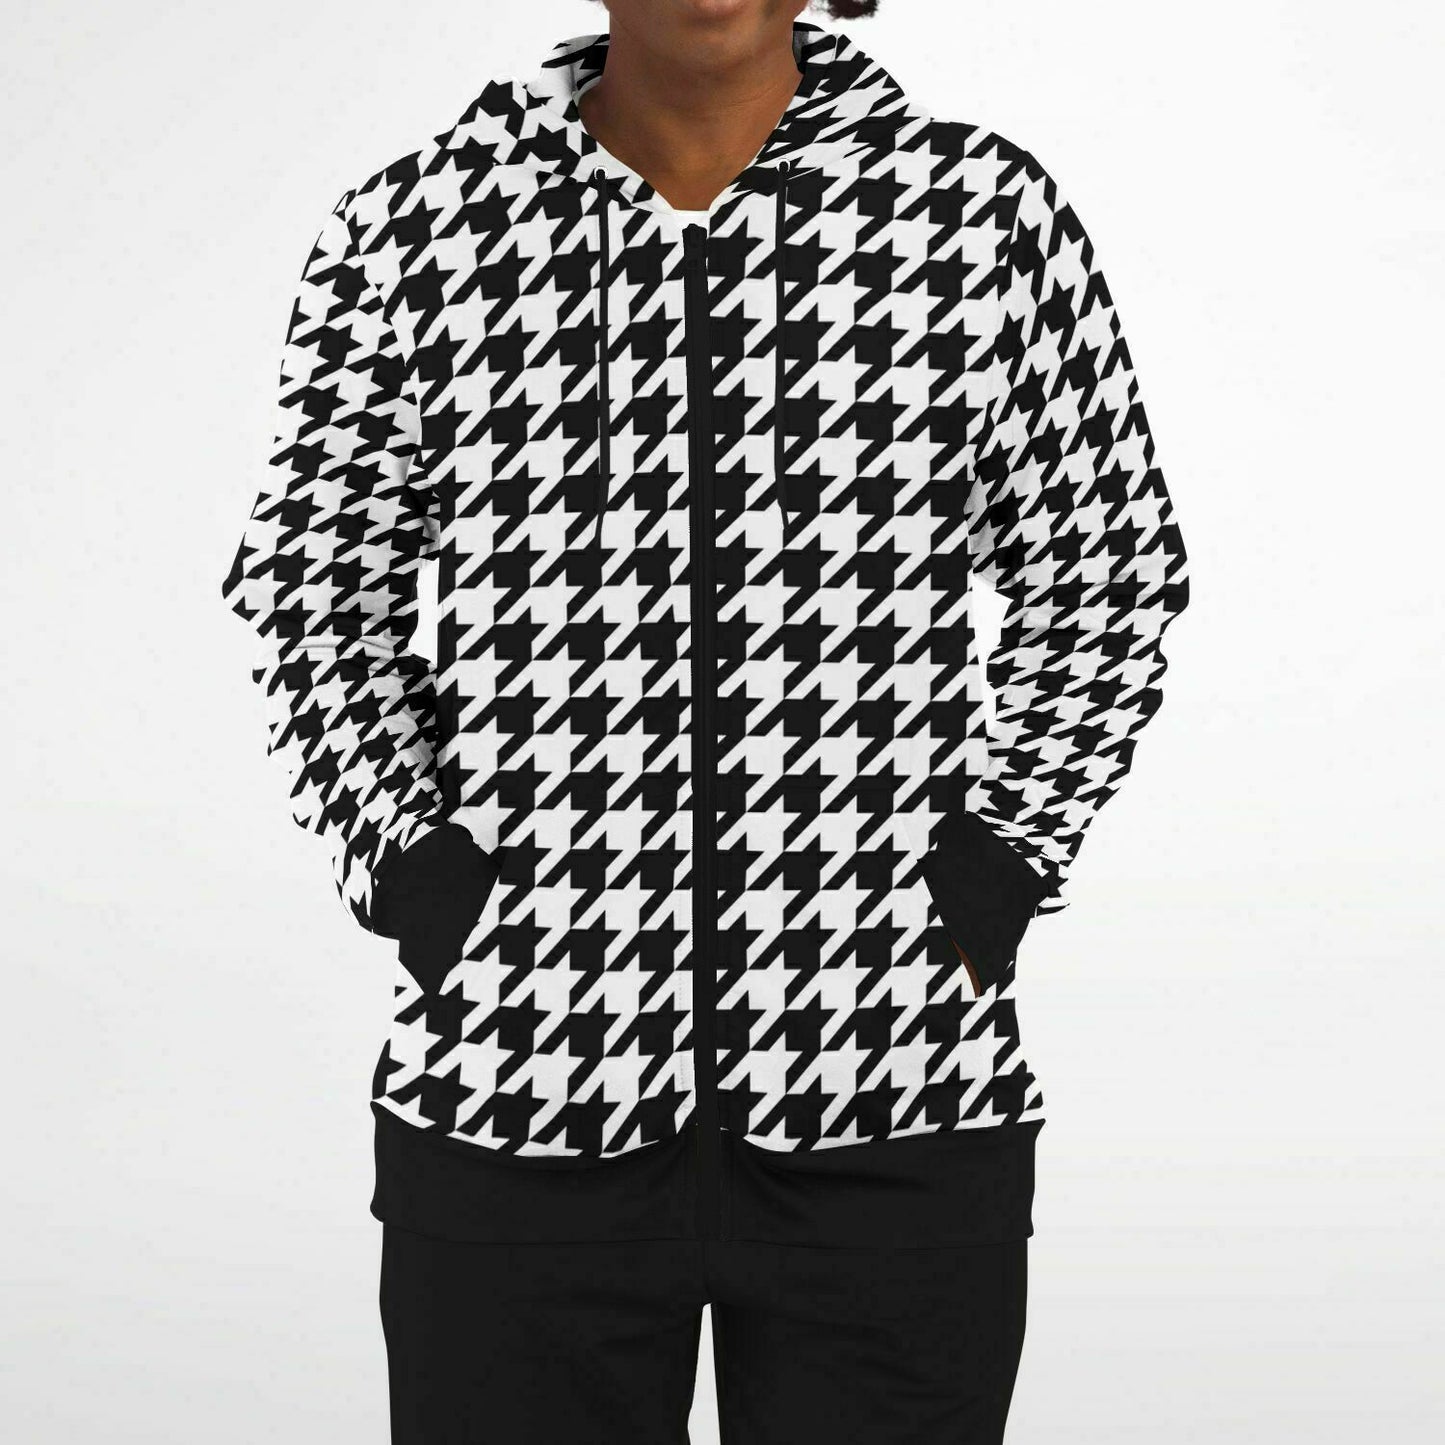 Houndstooth Zip Up Hoodie, Black White Front Zipper Pocket Men Women Unisex Adult Aesthetic Graphic Cotton Fleece Hooded Sweatshirt